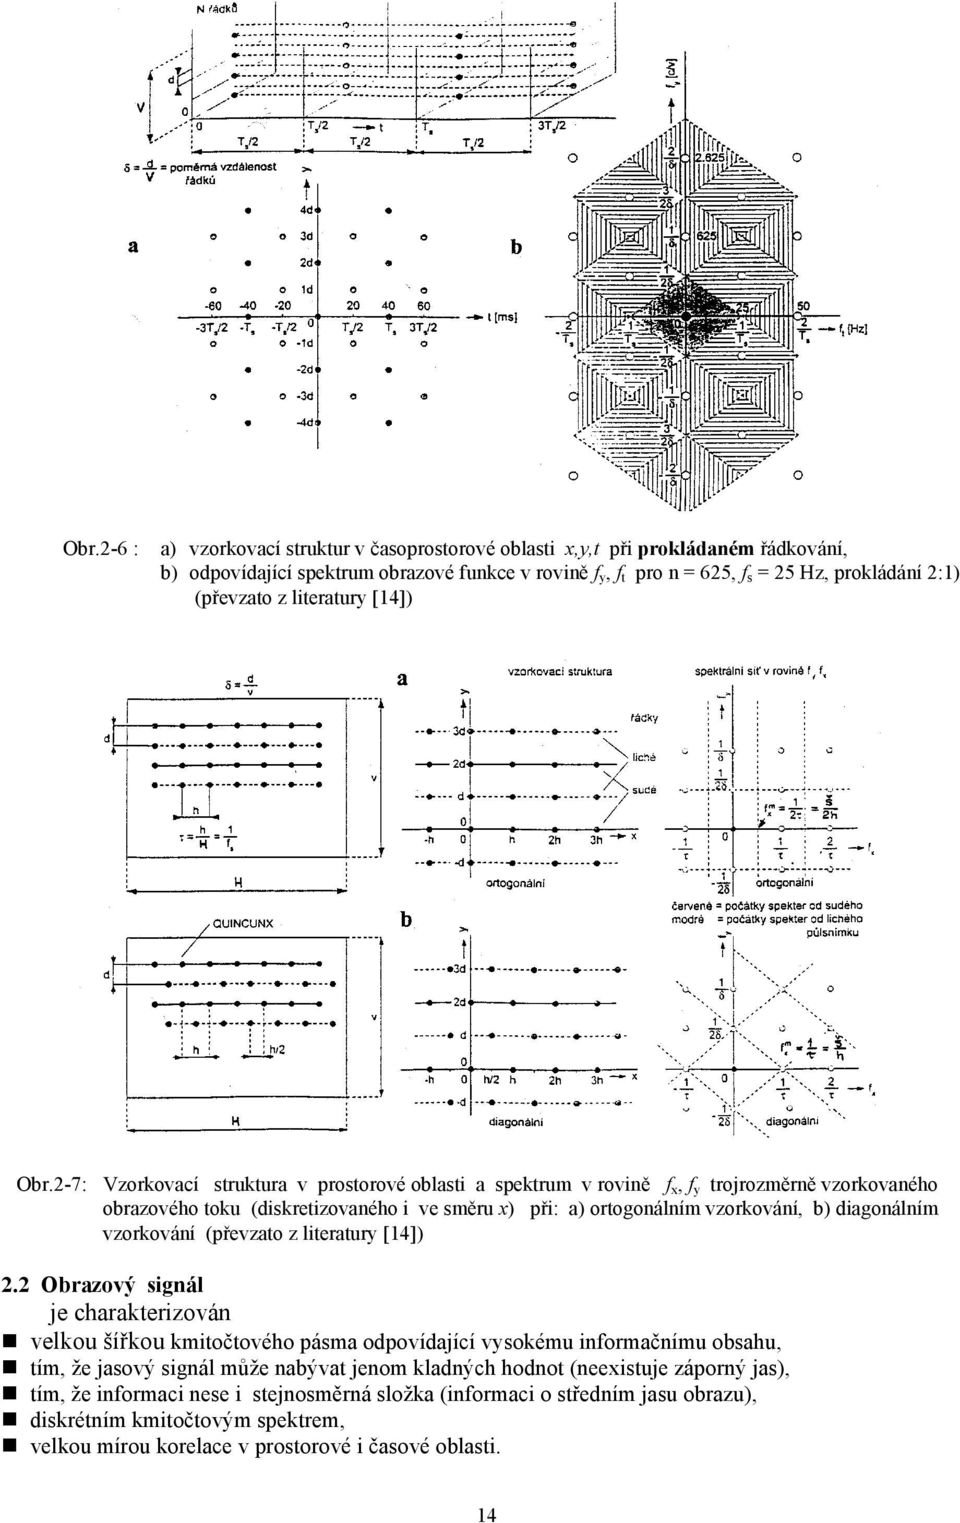 2-7: Vzorkovací struktura v prostorové oblasti a spektrum v rovině f x, f y trojrozměrně vzorkovaného obrazového toku (diskretizovaného i ve směru x) při: a) ortogonálním vzorkování, b) diagonálním